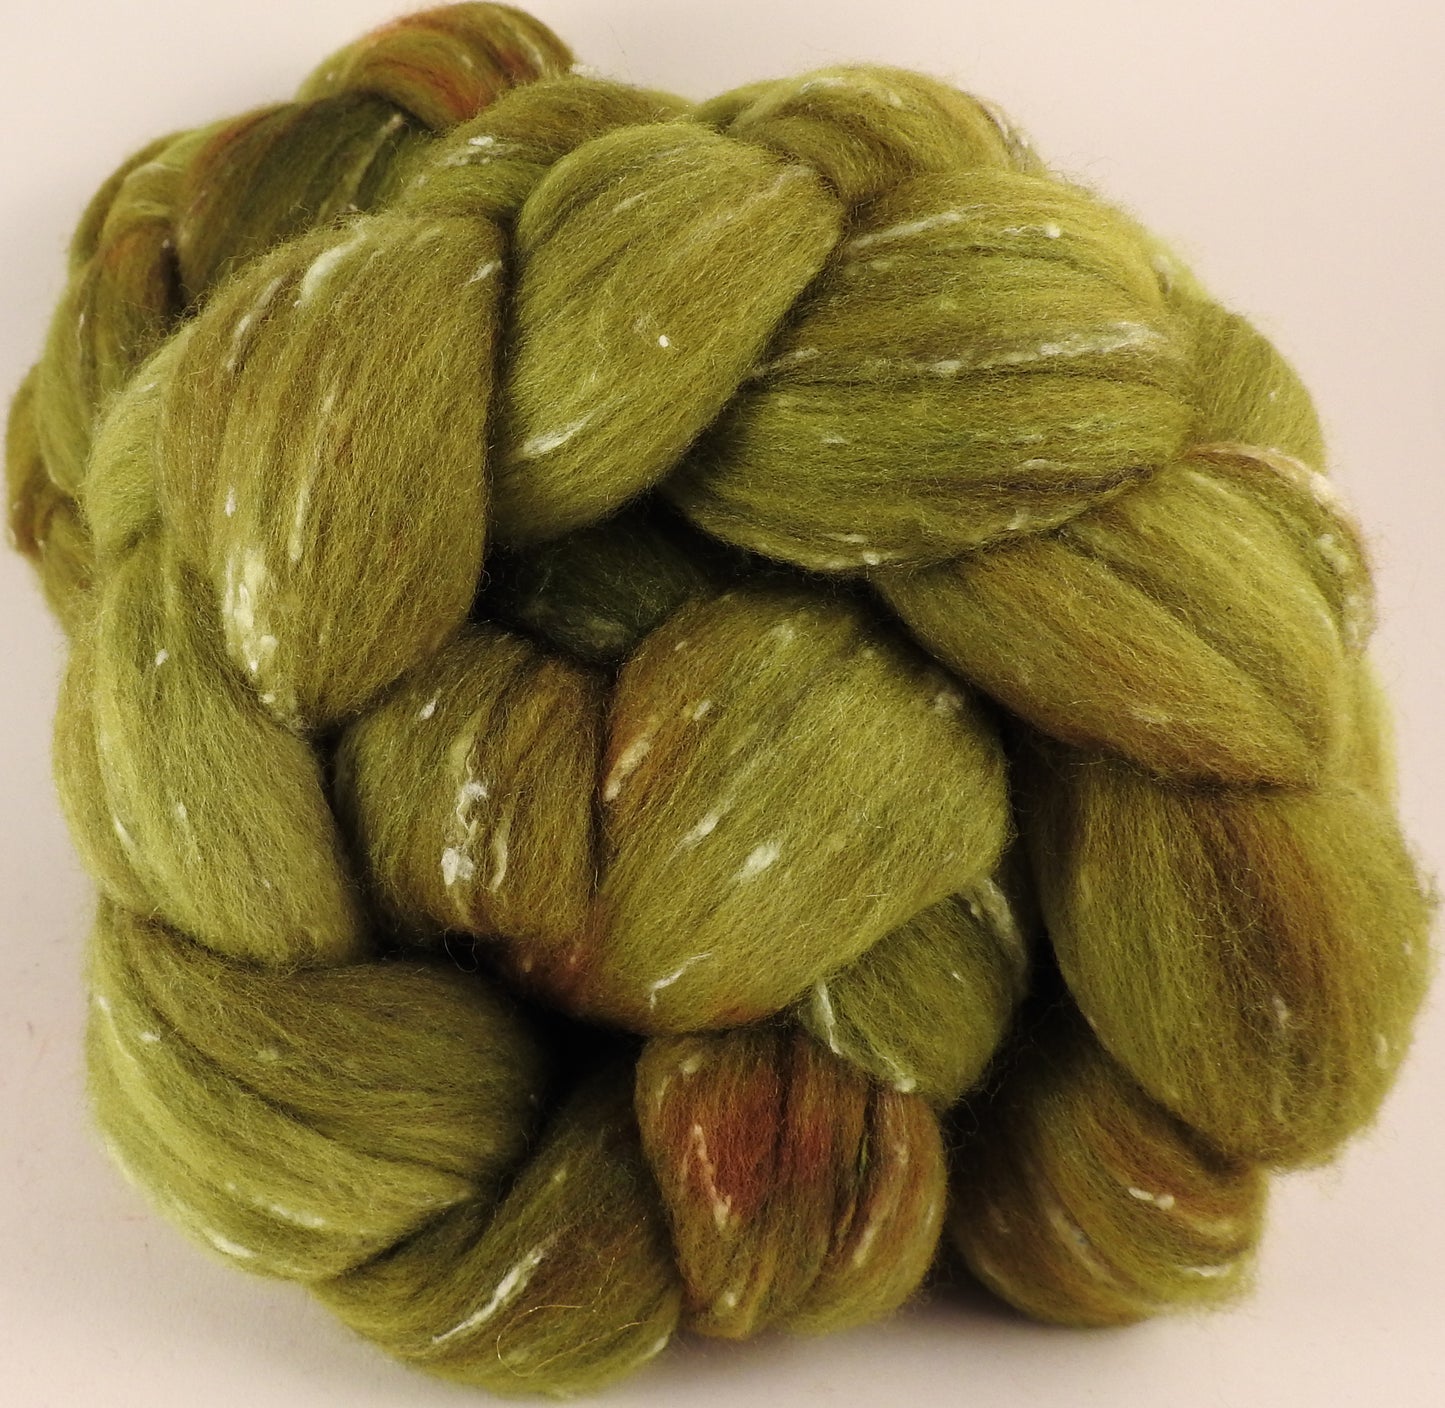 Batt in a Braid #42- Asparagus -  Polwarth/ Tweed Blend / Peduncle&Tussah Silk( 50/25/25) - Inglenook Fibers